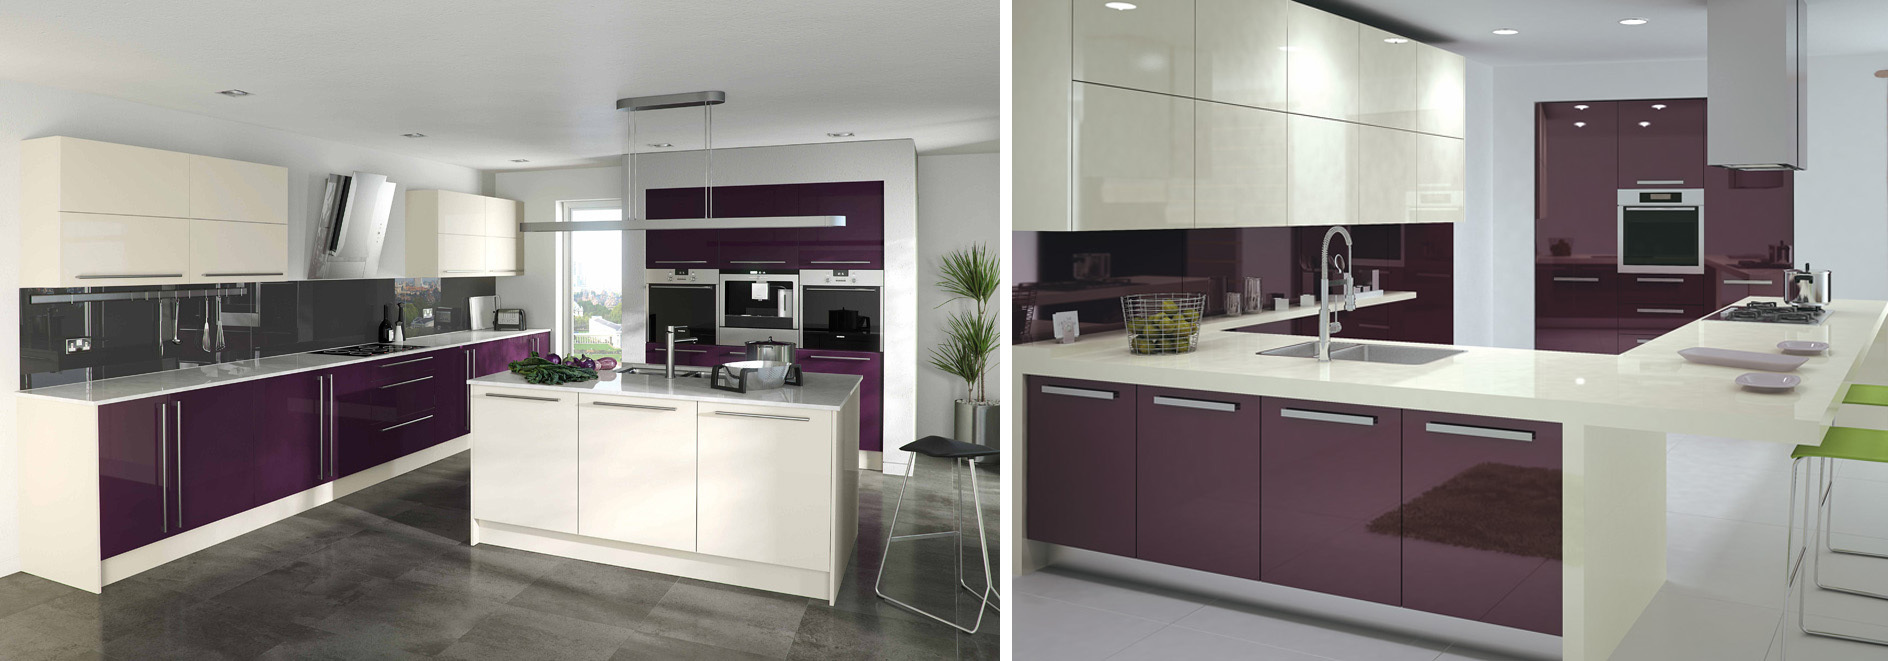 purple and beige kitchen cabinet